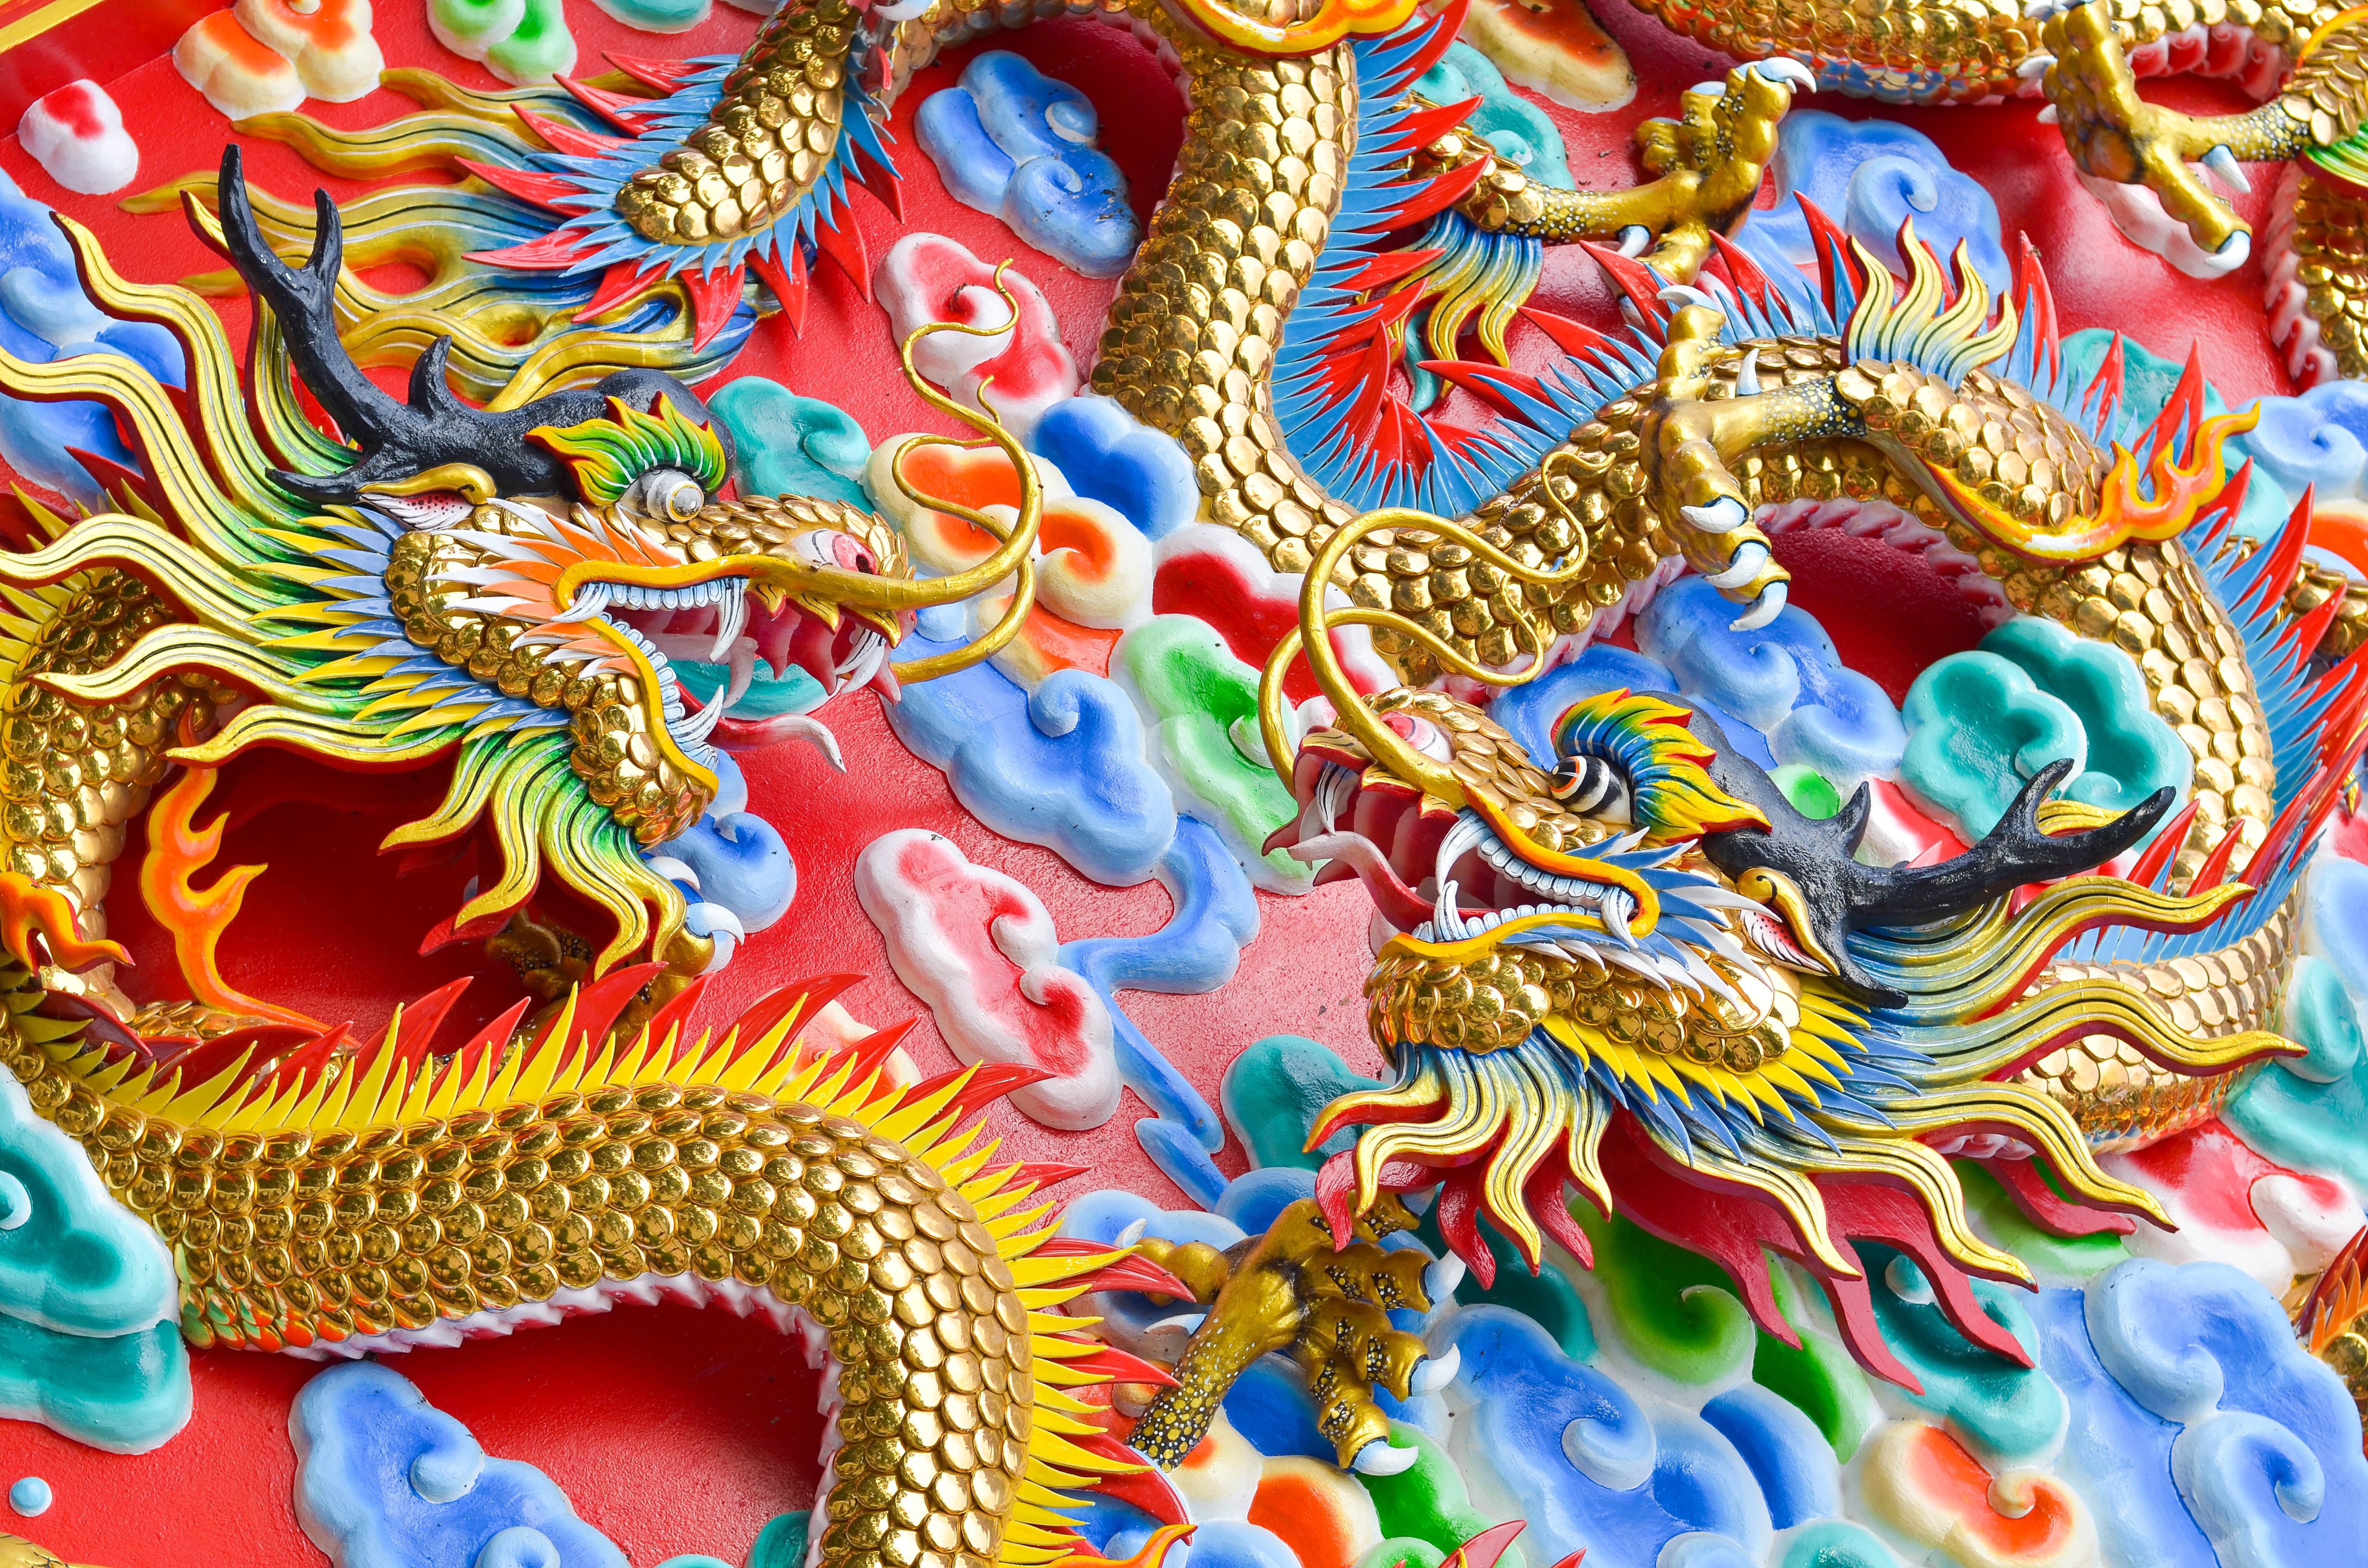 Dragon Chinois - Symbolisme, Signification, Mythologie et Festivals